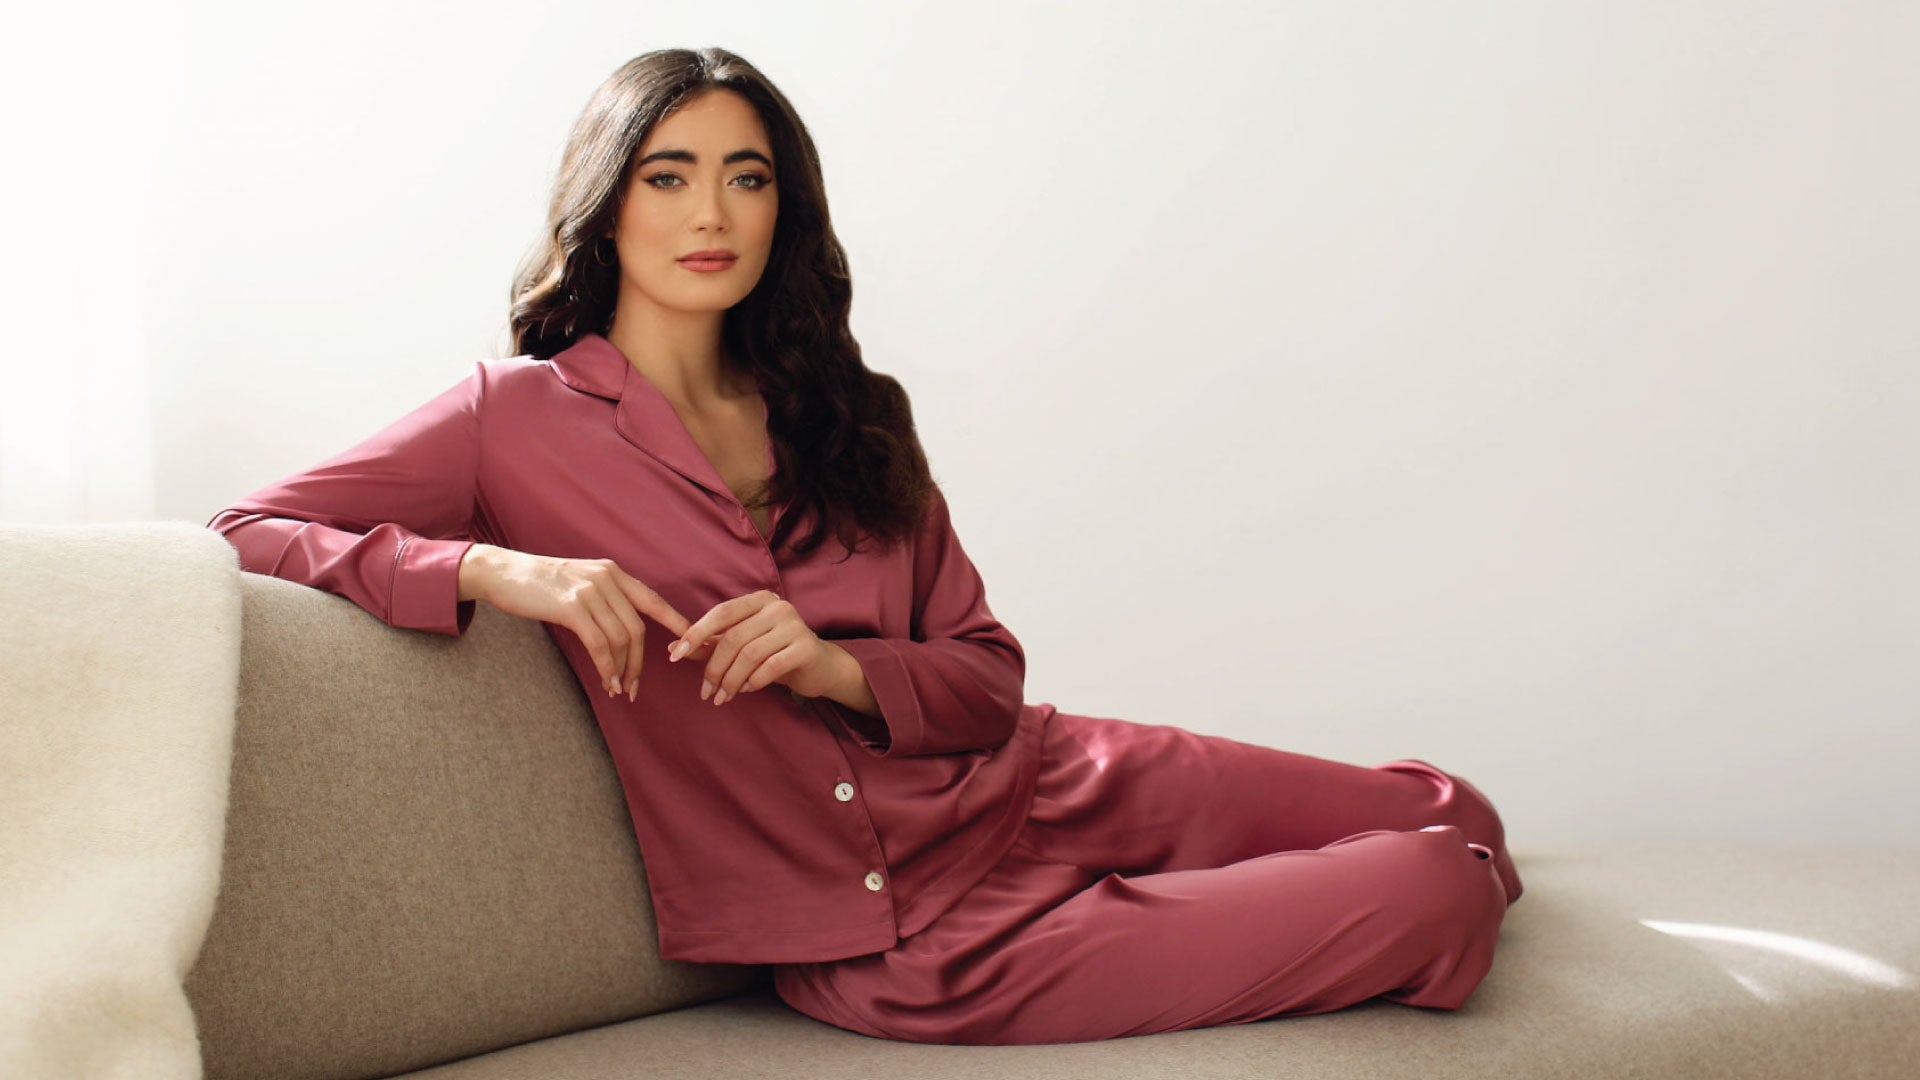 Pijanas Women Sleepwear Women Pijama Clothing Sets Women Clearance Wholesale